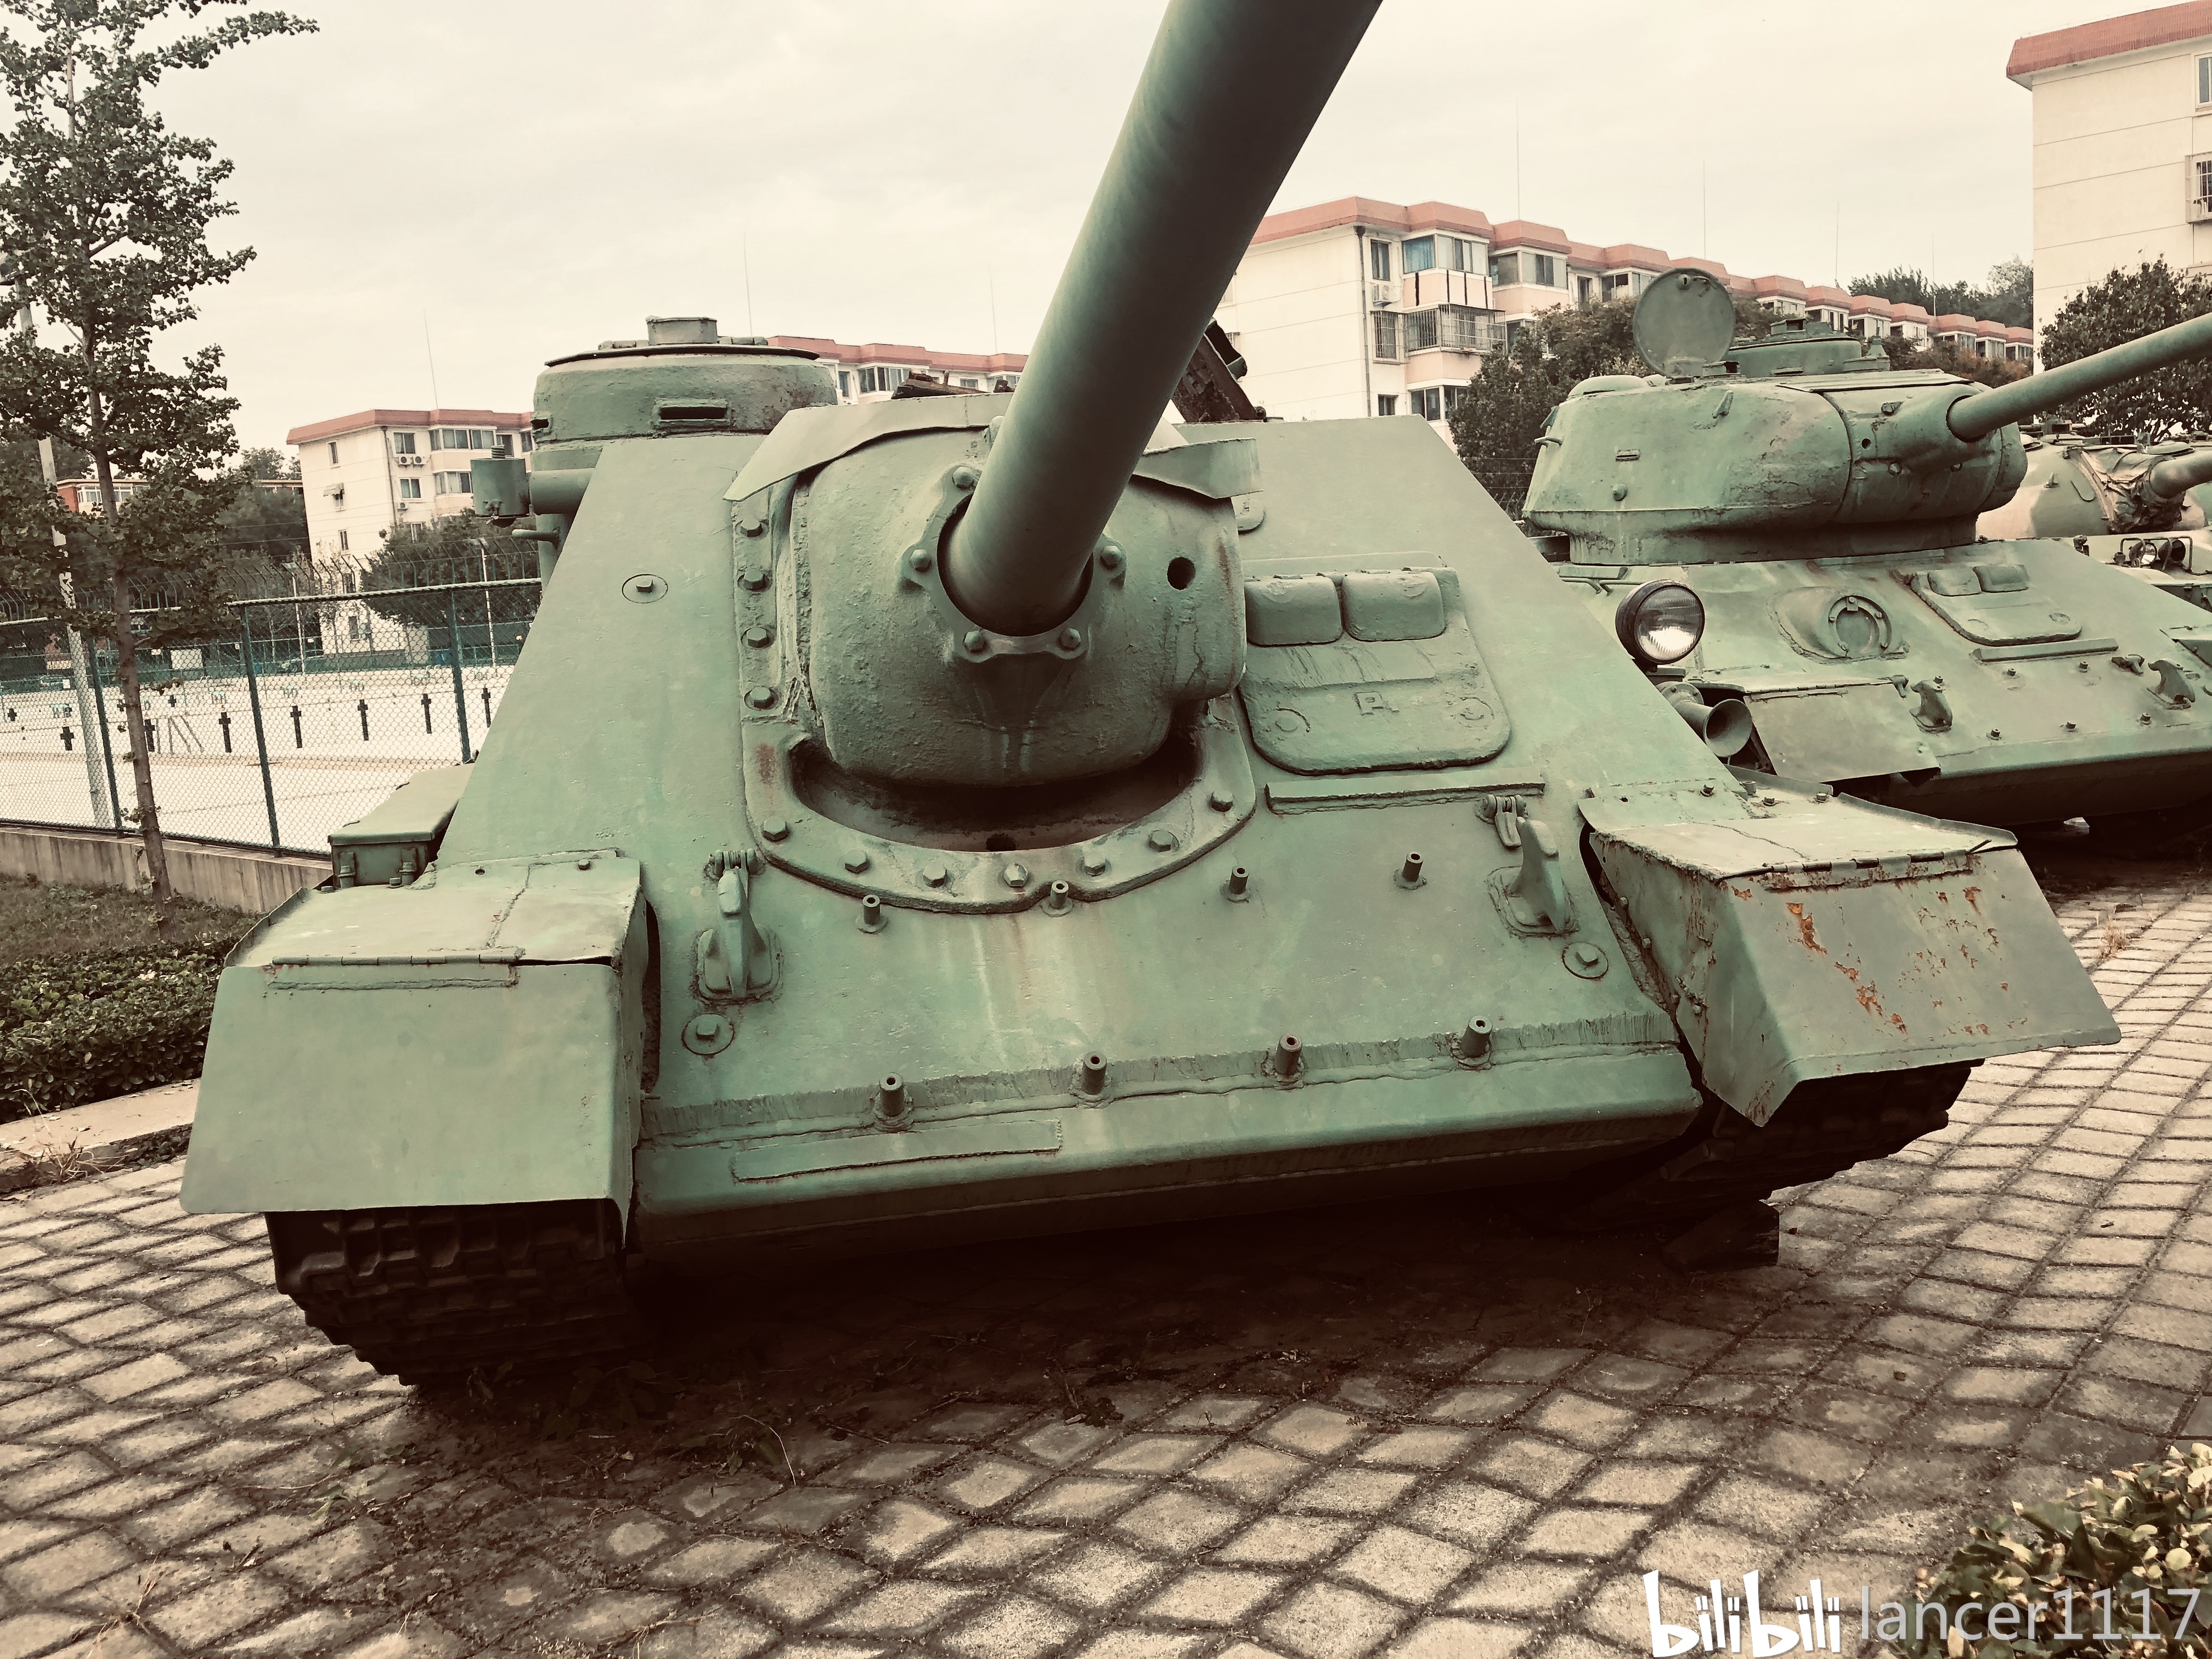 人文历史 近距离接触中国仅有的一台酋长主战坦克 su-100坦克歼击车